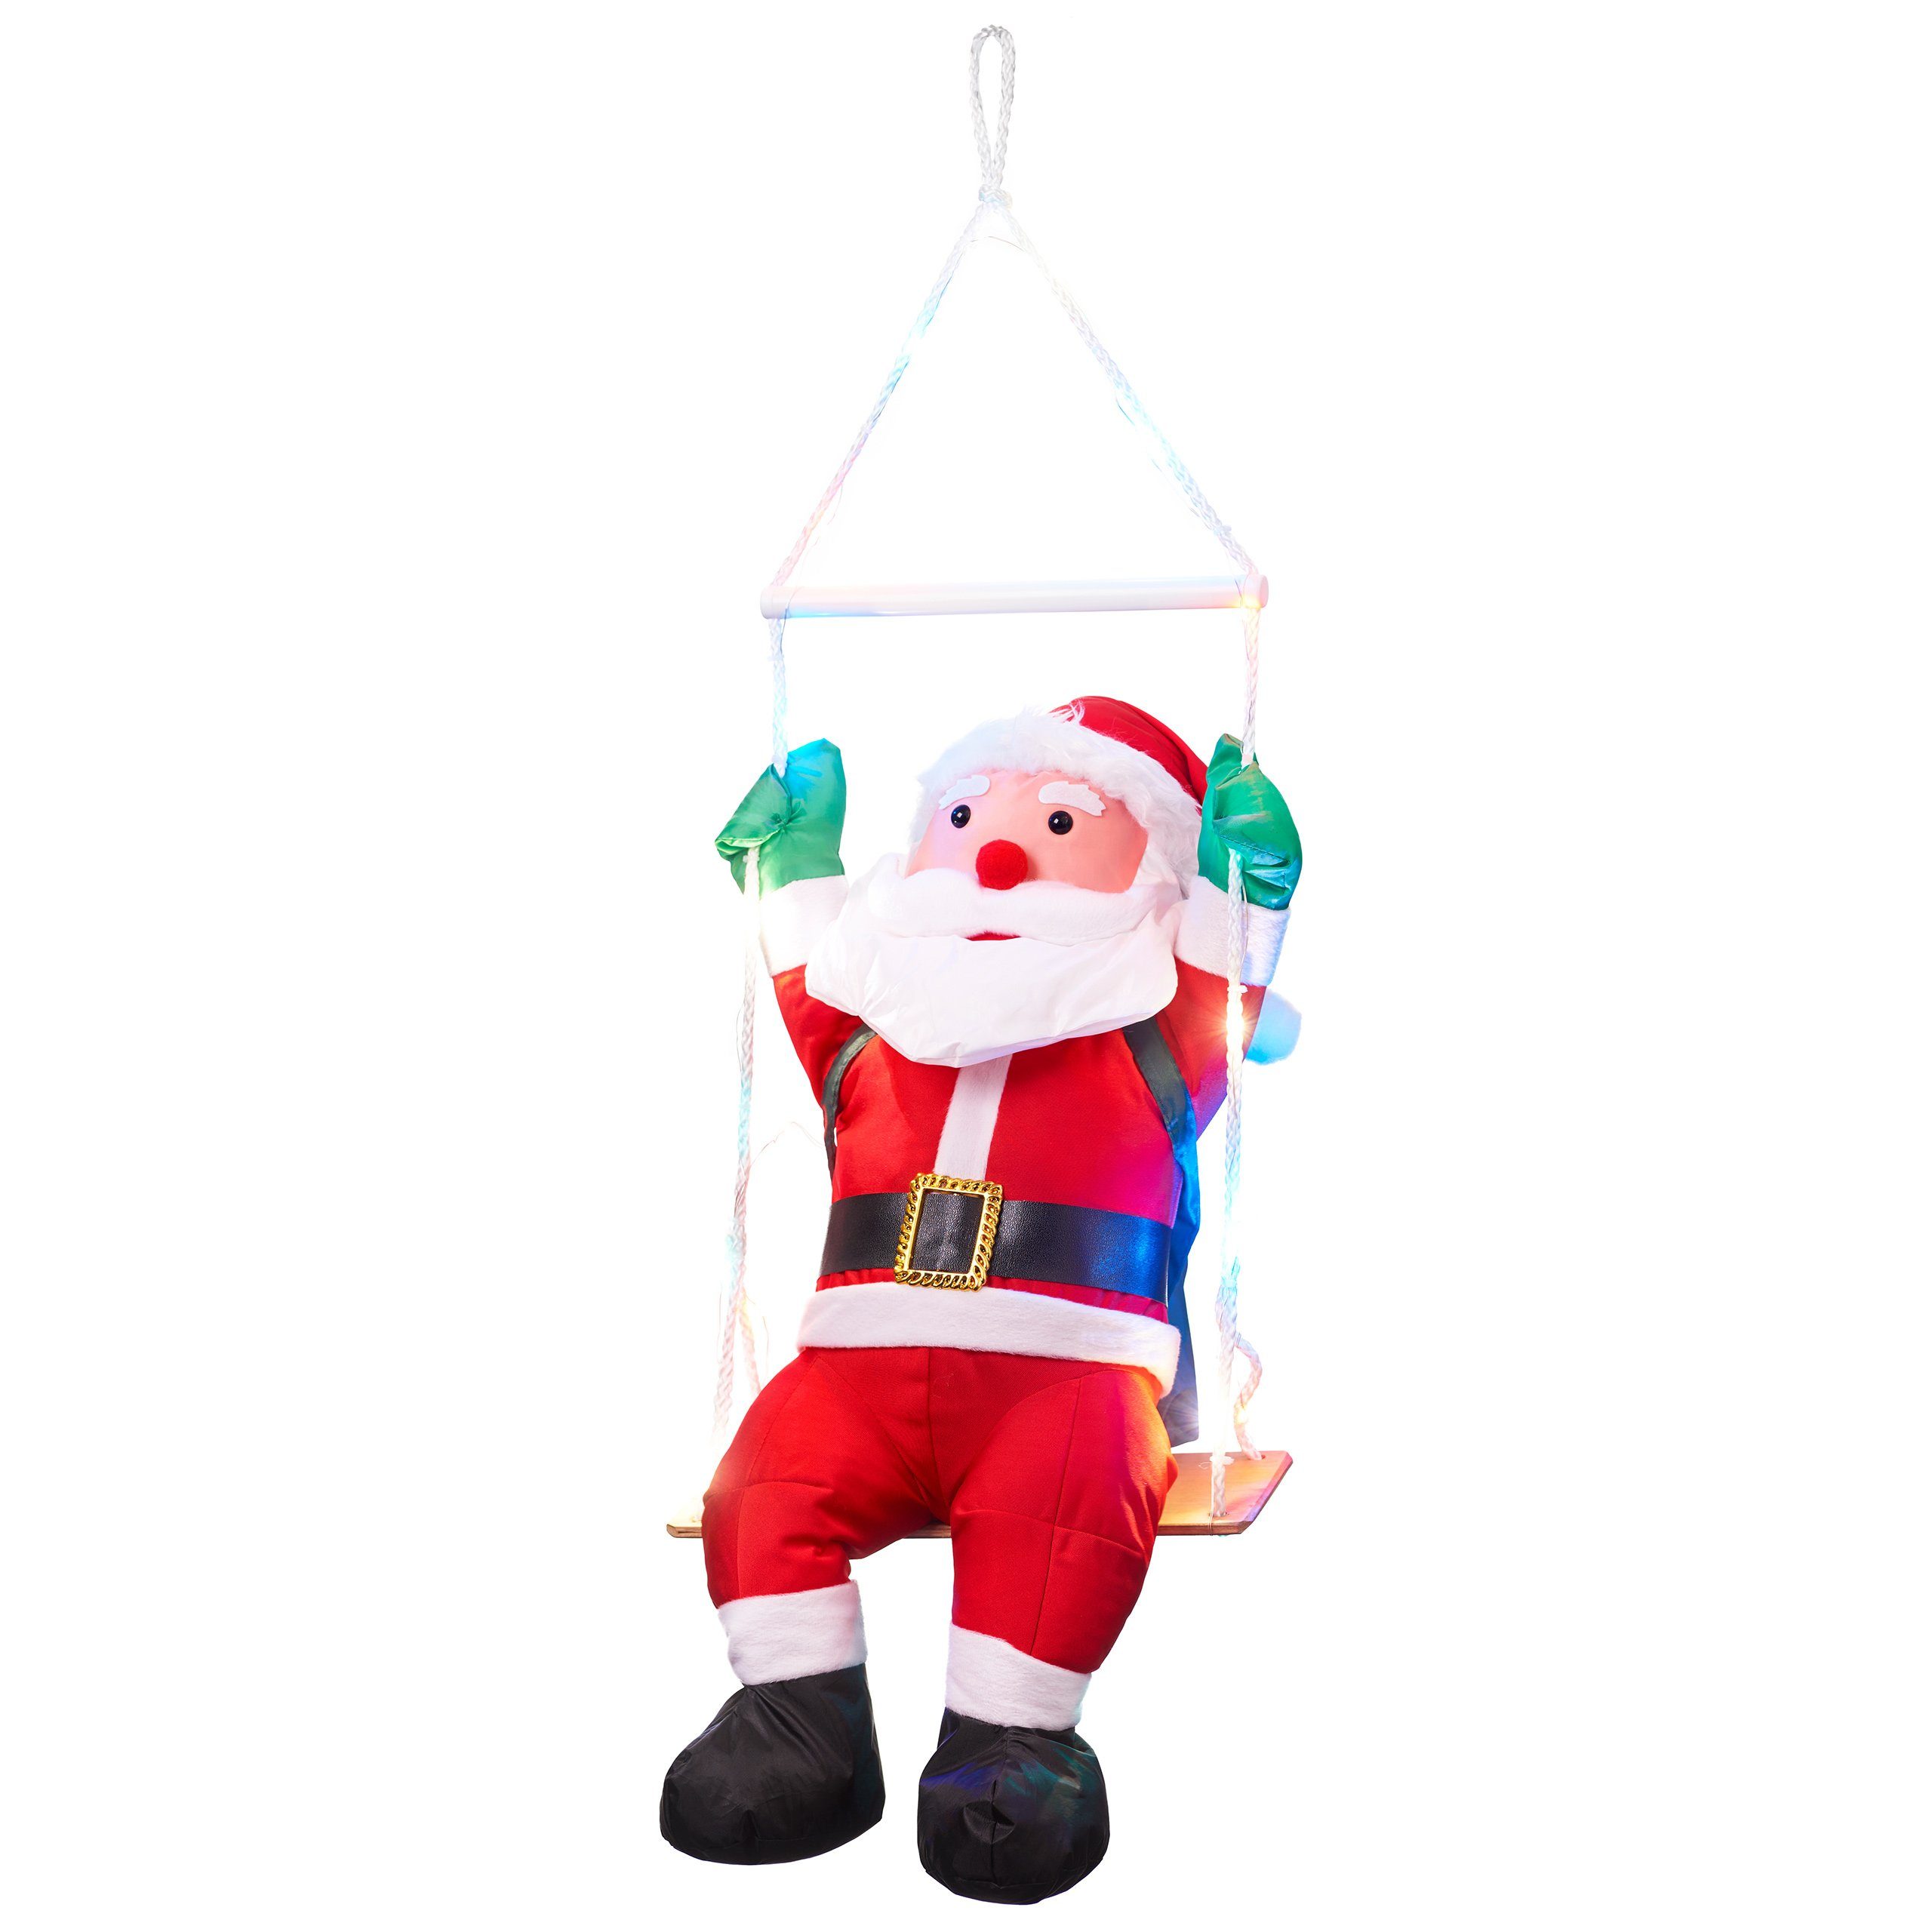 BONETTI Raburg Weihnachtsmann auf Schaukel mit bunten LEDs, weiche XL Deko-Figur für Weihnachten, mit 20 bunten LEDs, 6 h Timer, ca. 60 cm groß, Gesamthöhe: ca. 90 cm | Weihnachtsmänner